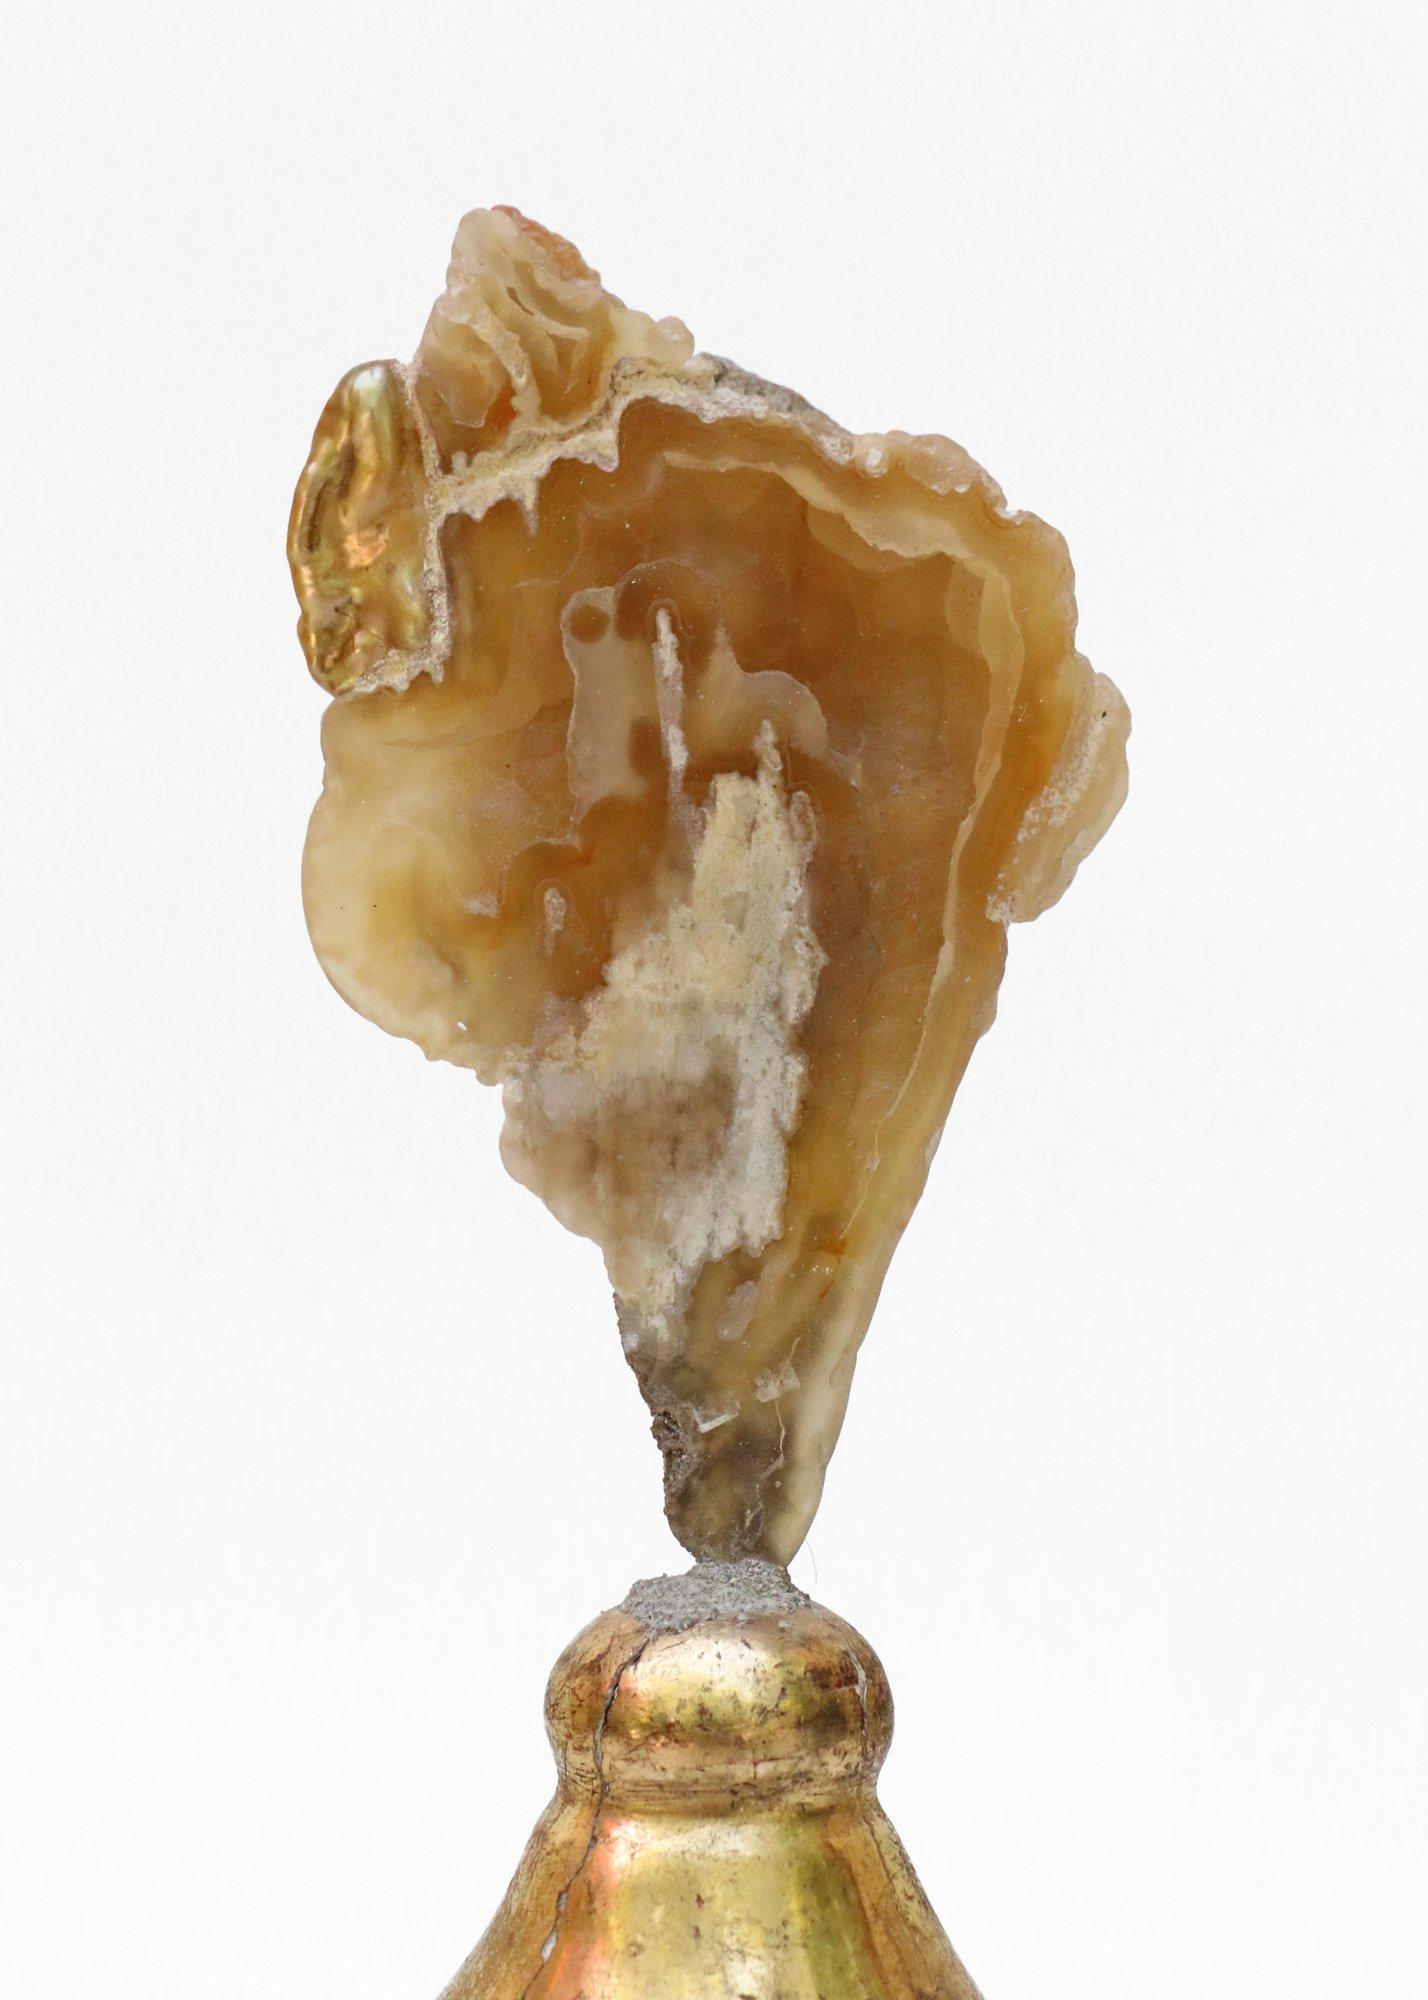 bougeoir italien du XVIIIe siècle avec un corail agate poli et une perle baroque.

Le sommet du chandelier du XVIIIe siècle provenait à l'origine d'un chandelier d'une église de Toscane. La pièce repose sur les plateaux d'égouttage en métal